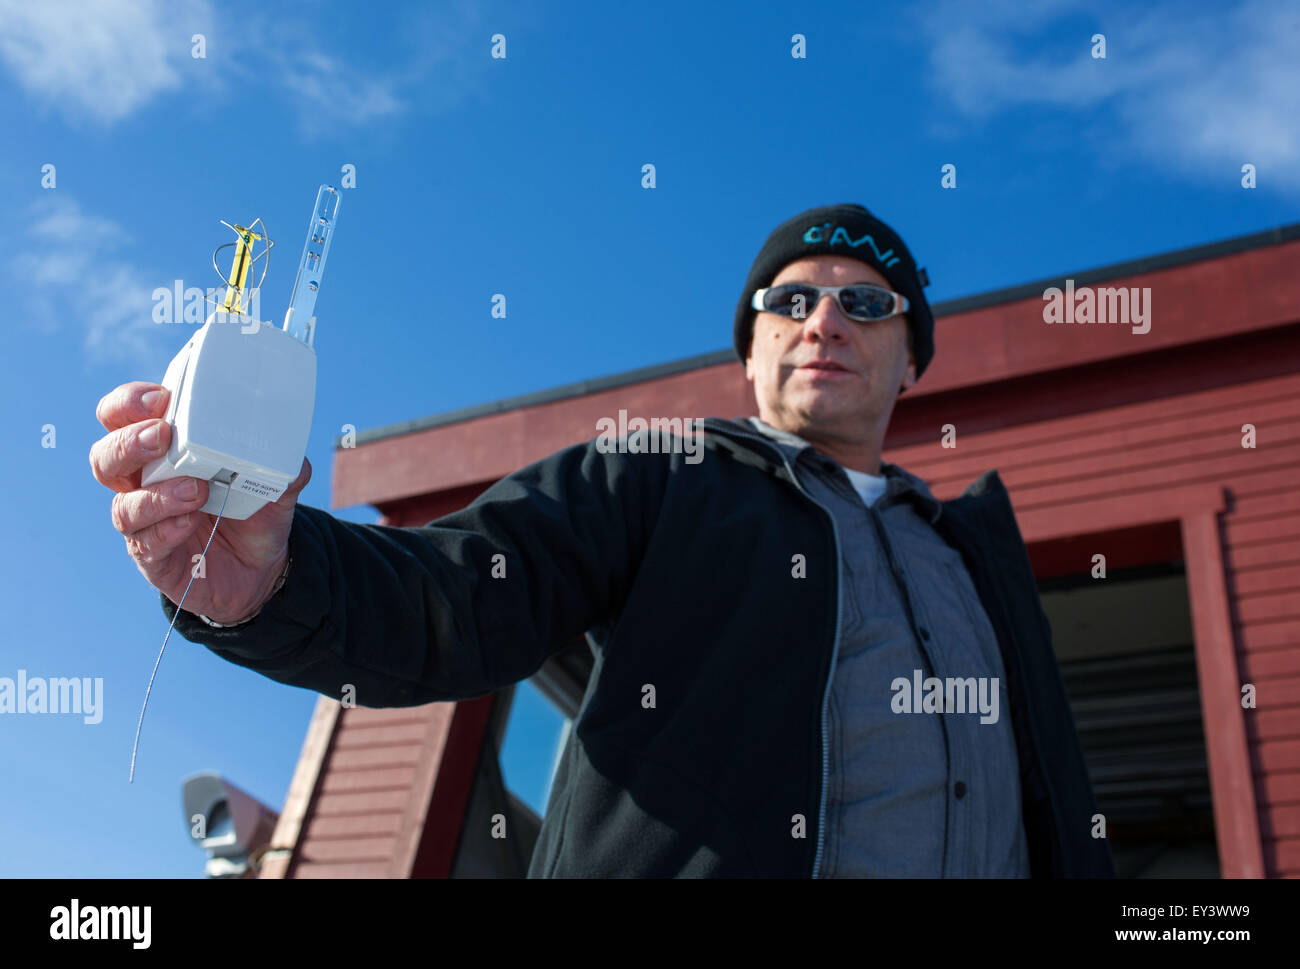 Jürgen Graeser technicien de l'Observatoire atmosphérique de l'AWIPEV station de recherche montre comment l'ozone combiné radio- et capteurs enregistrent des données mesurées au cours d'un vol en ballon et les envoyer à la centrale à Ny-Alesund sur le Spitzberg, Norvège, 09 avril 2015. Depuis 2003, l'allemand et les chercheurs français travaillant dans la station de recherches AWIPEV dans le peuplement ancien mineur sur l'archipel du Svalbard. L'observation de la stratosphère arctique et des enquêtes de la vie dans et autour de la mer de l'Arctique par les océanographes, géologues, de l'océan arctique et la physique sont des champs de travail scientifique o Banque D'Images